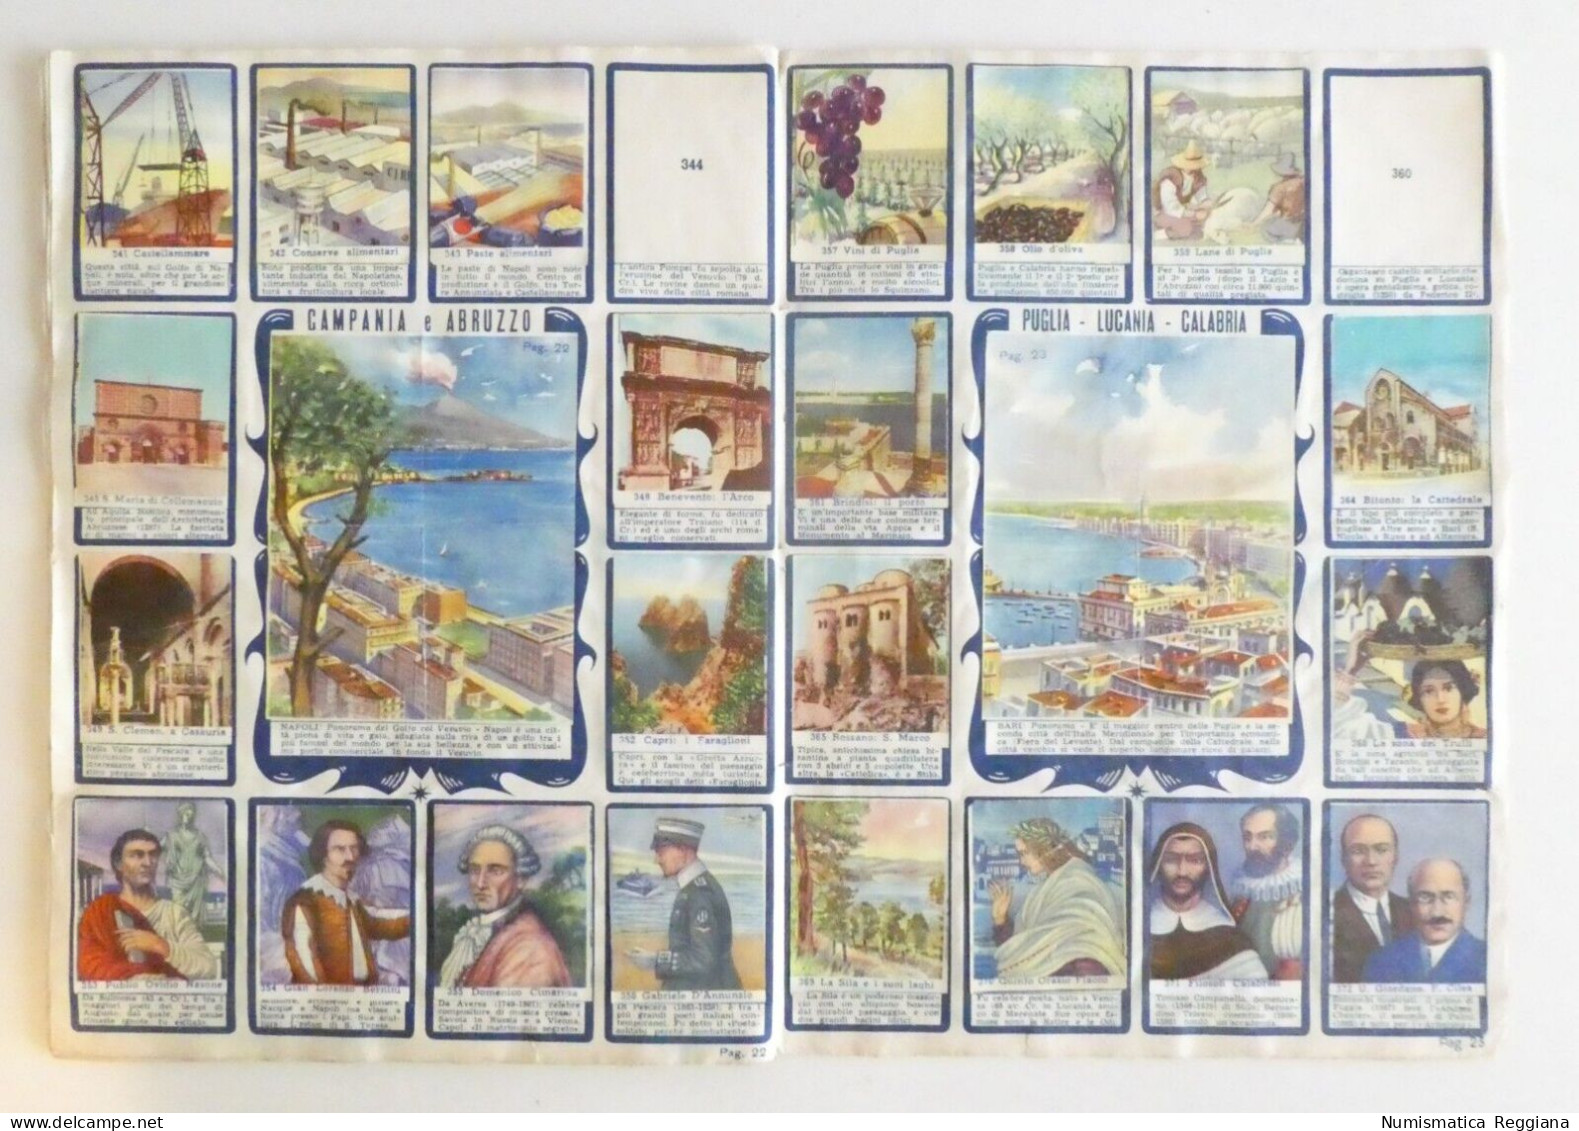 Album figurine le regioni d'Italia - Edizione lampo 1954 (10 figurine mancanti)